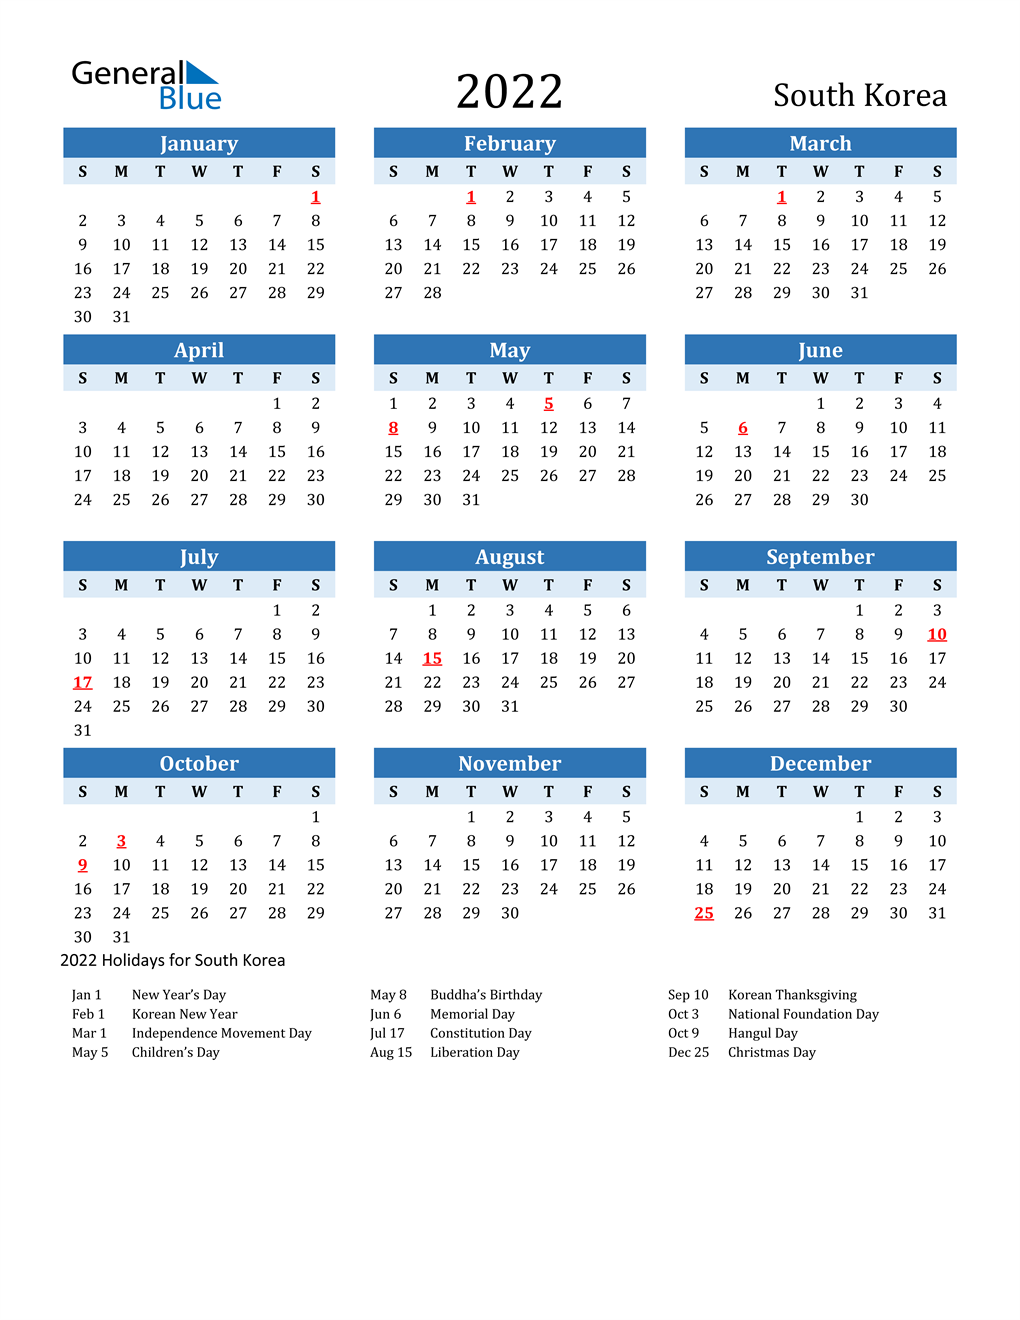 Korean Calendar 2022 2022 South Korea Calendar With Holidays